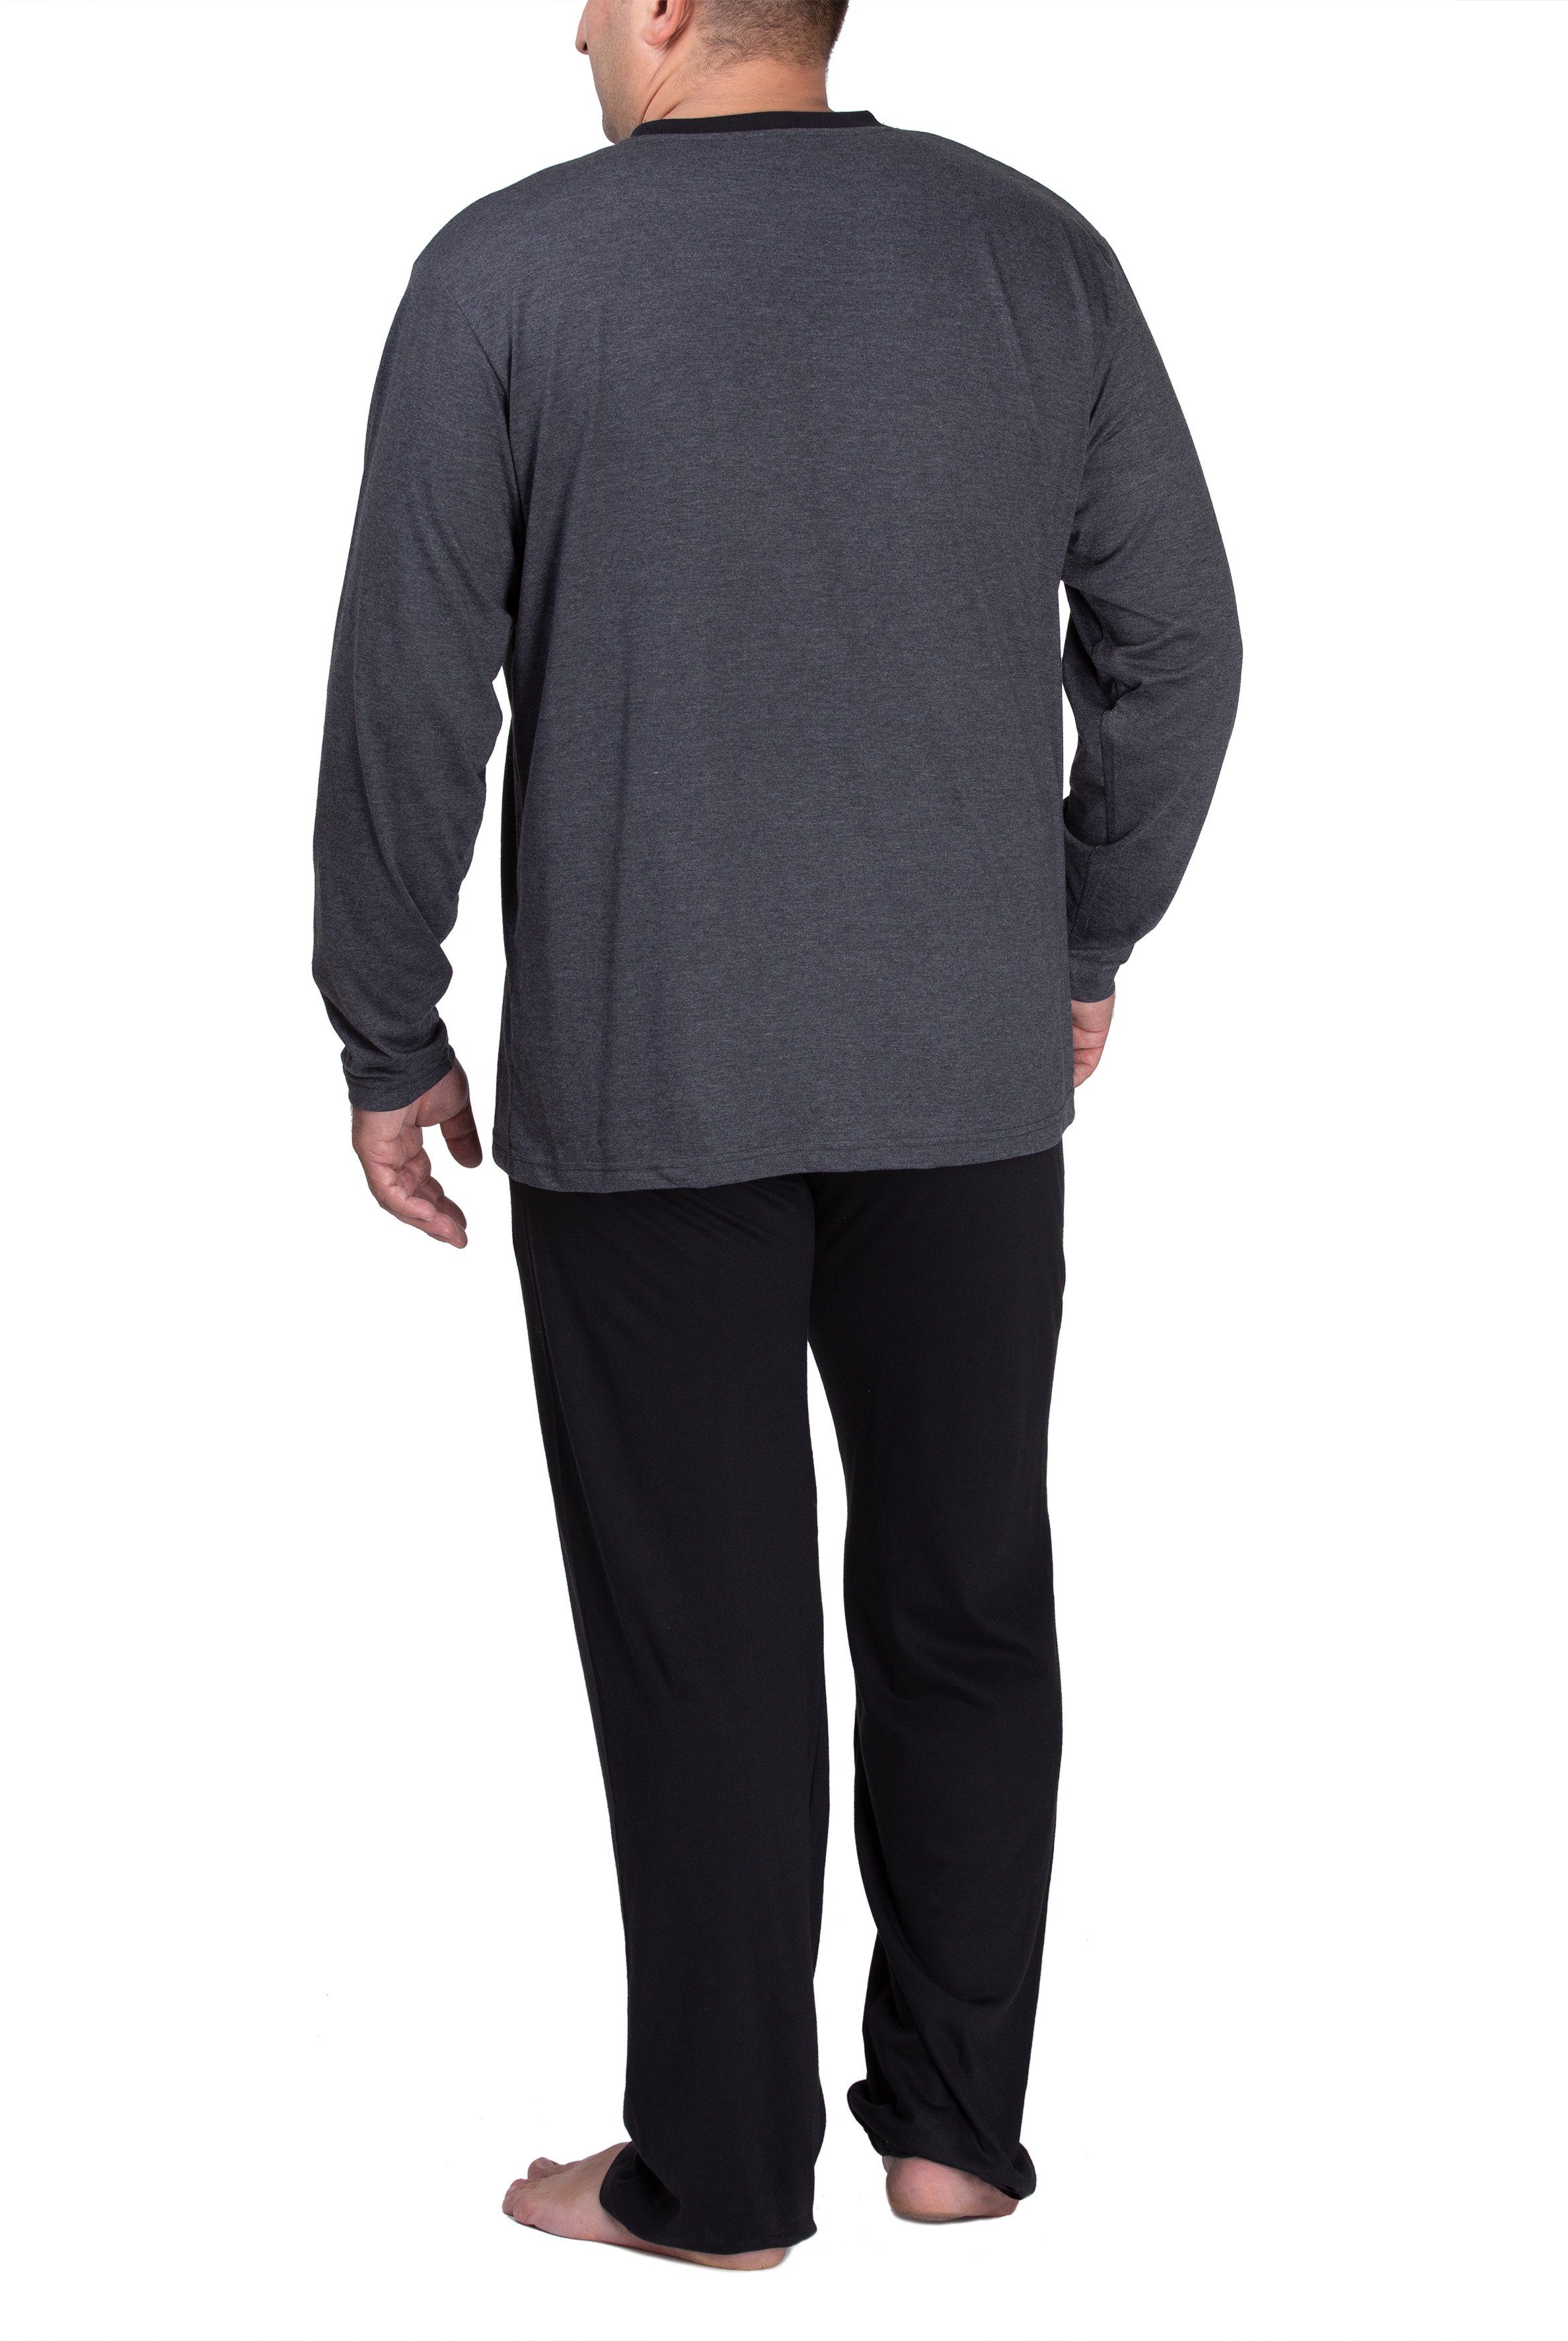 Moonline Pyjama Schlafanzug Herren aus (XXL-5XL) anthrazit lang Übergröße in Baumwolle